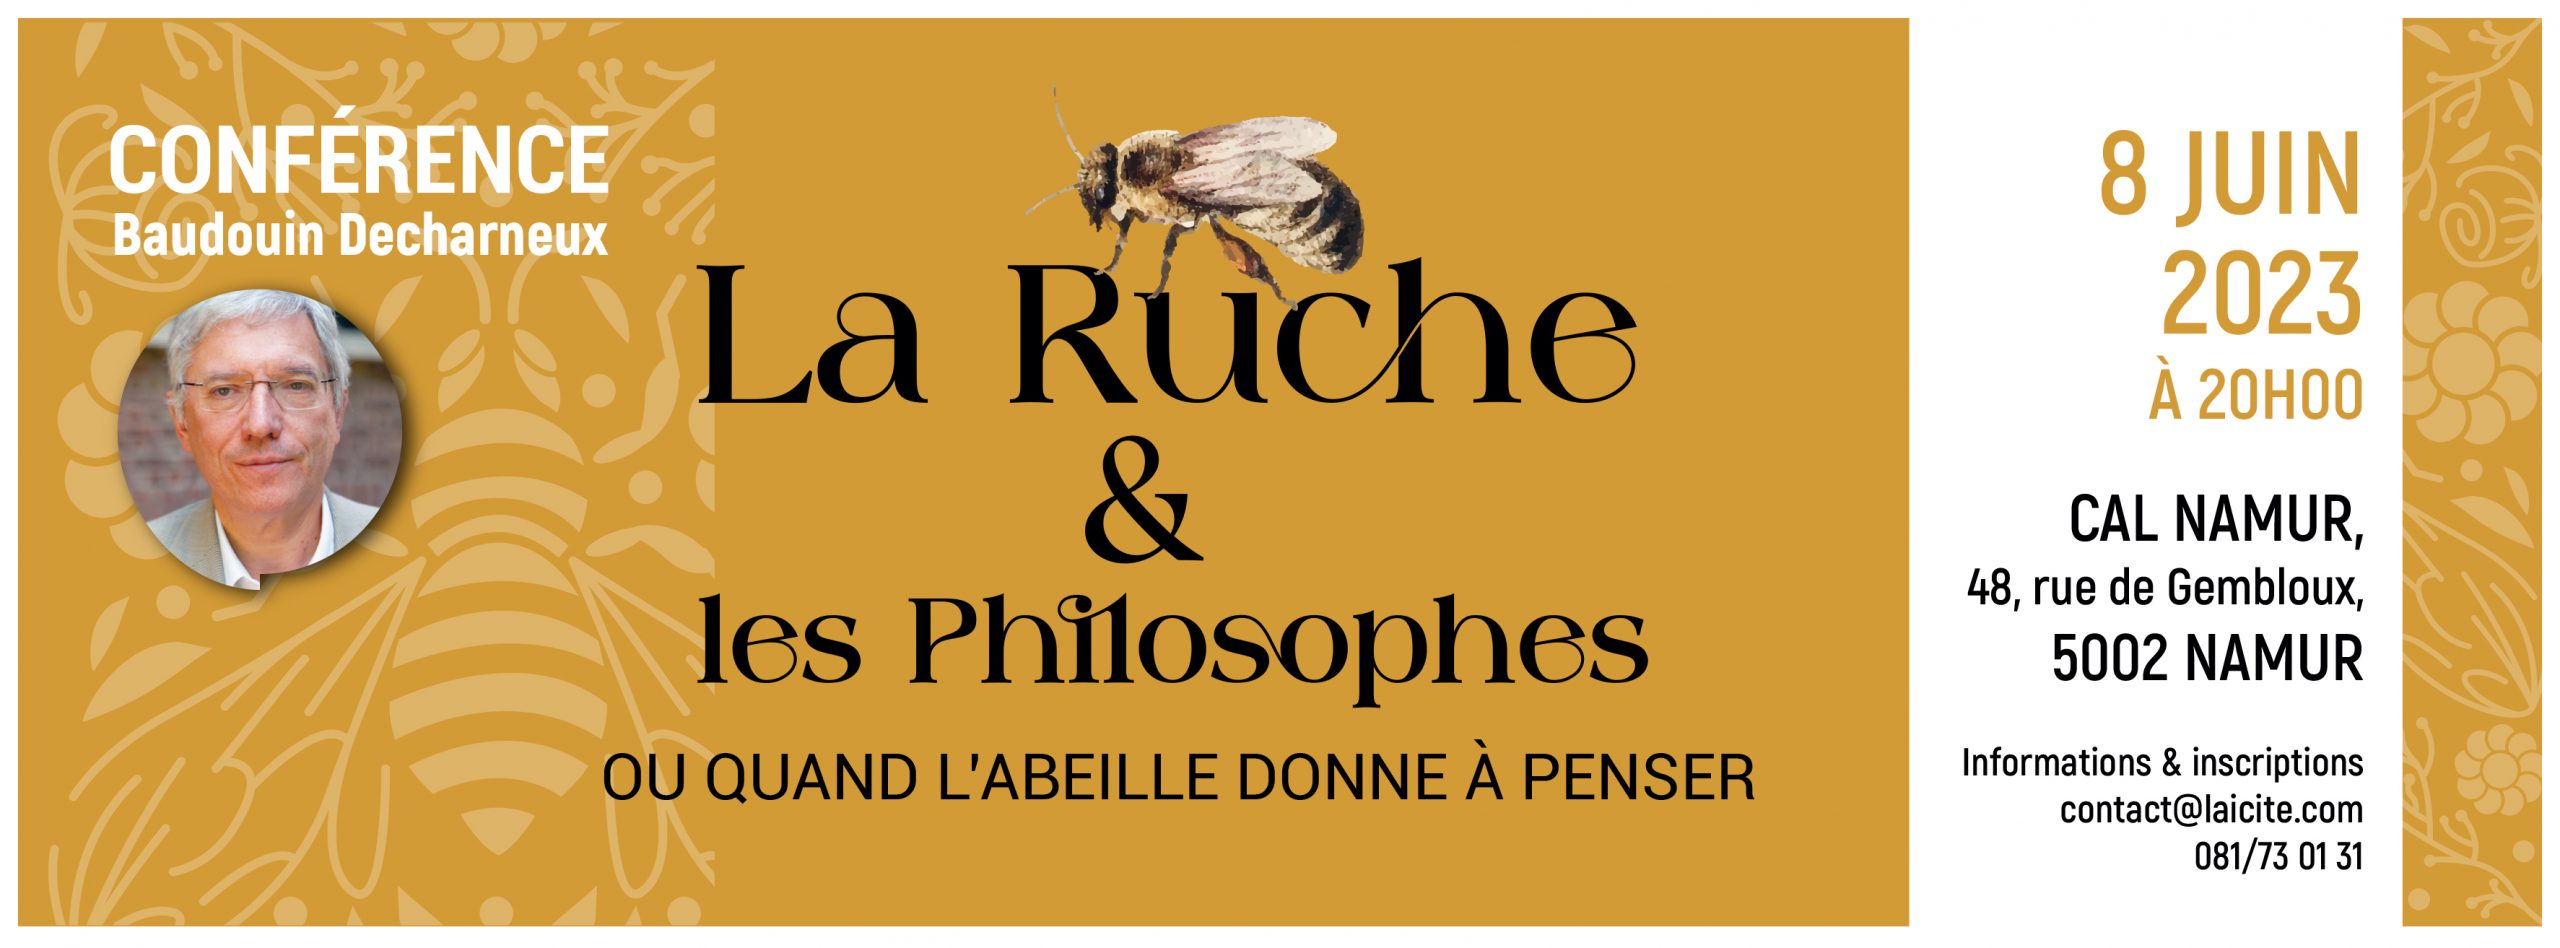 Conférence – “La ruche & les philosophes, ou quand l’abeille donne à penser”